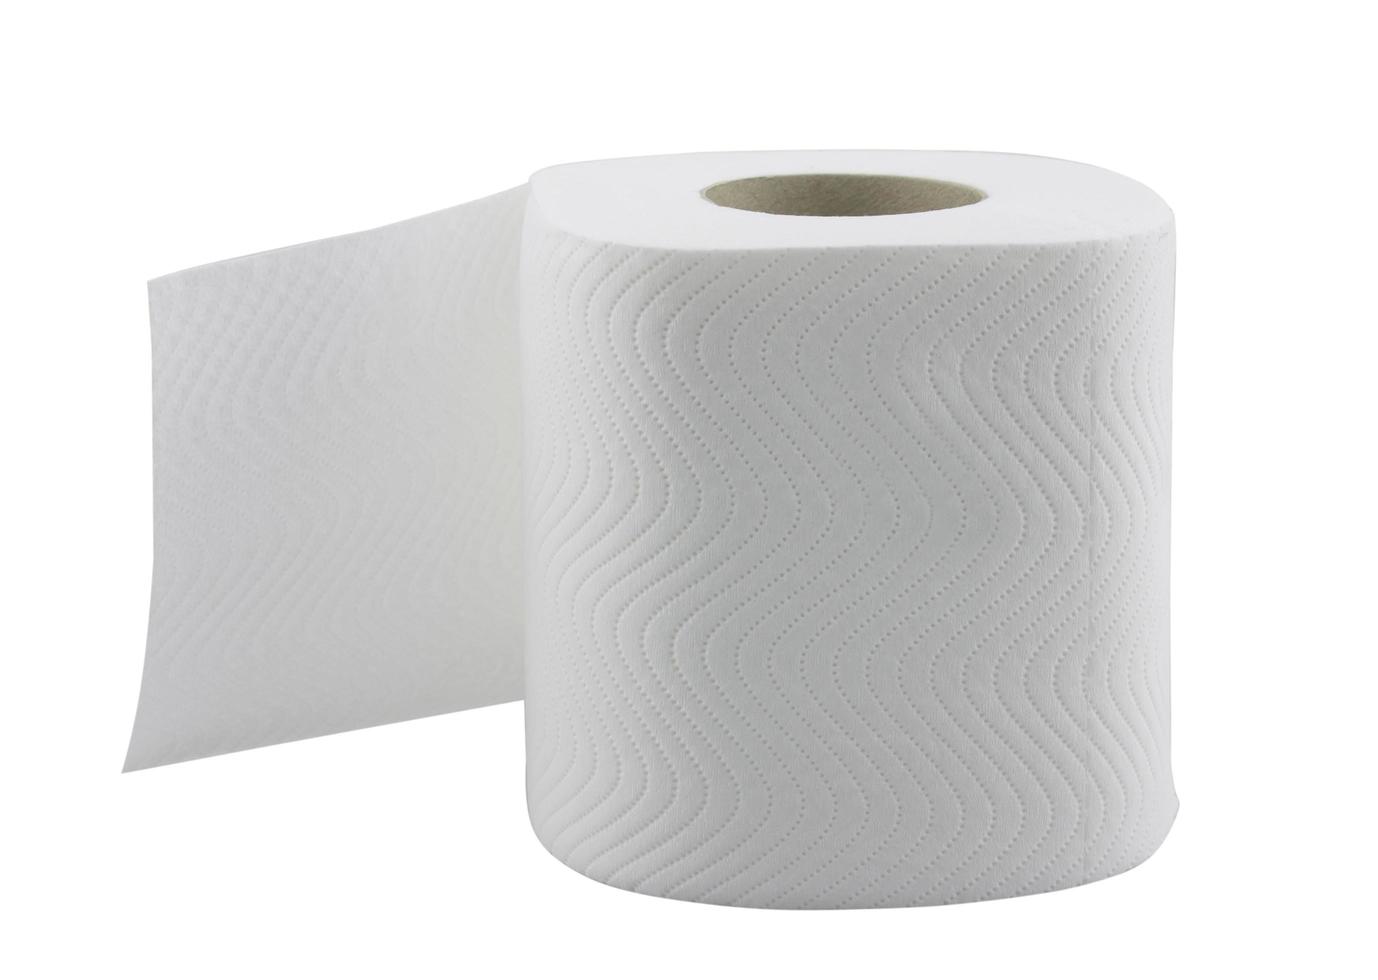 rotolo di carta igienica o tessuto isolato su bianco foto